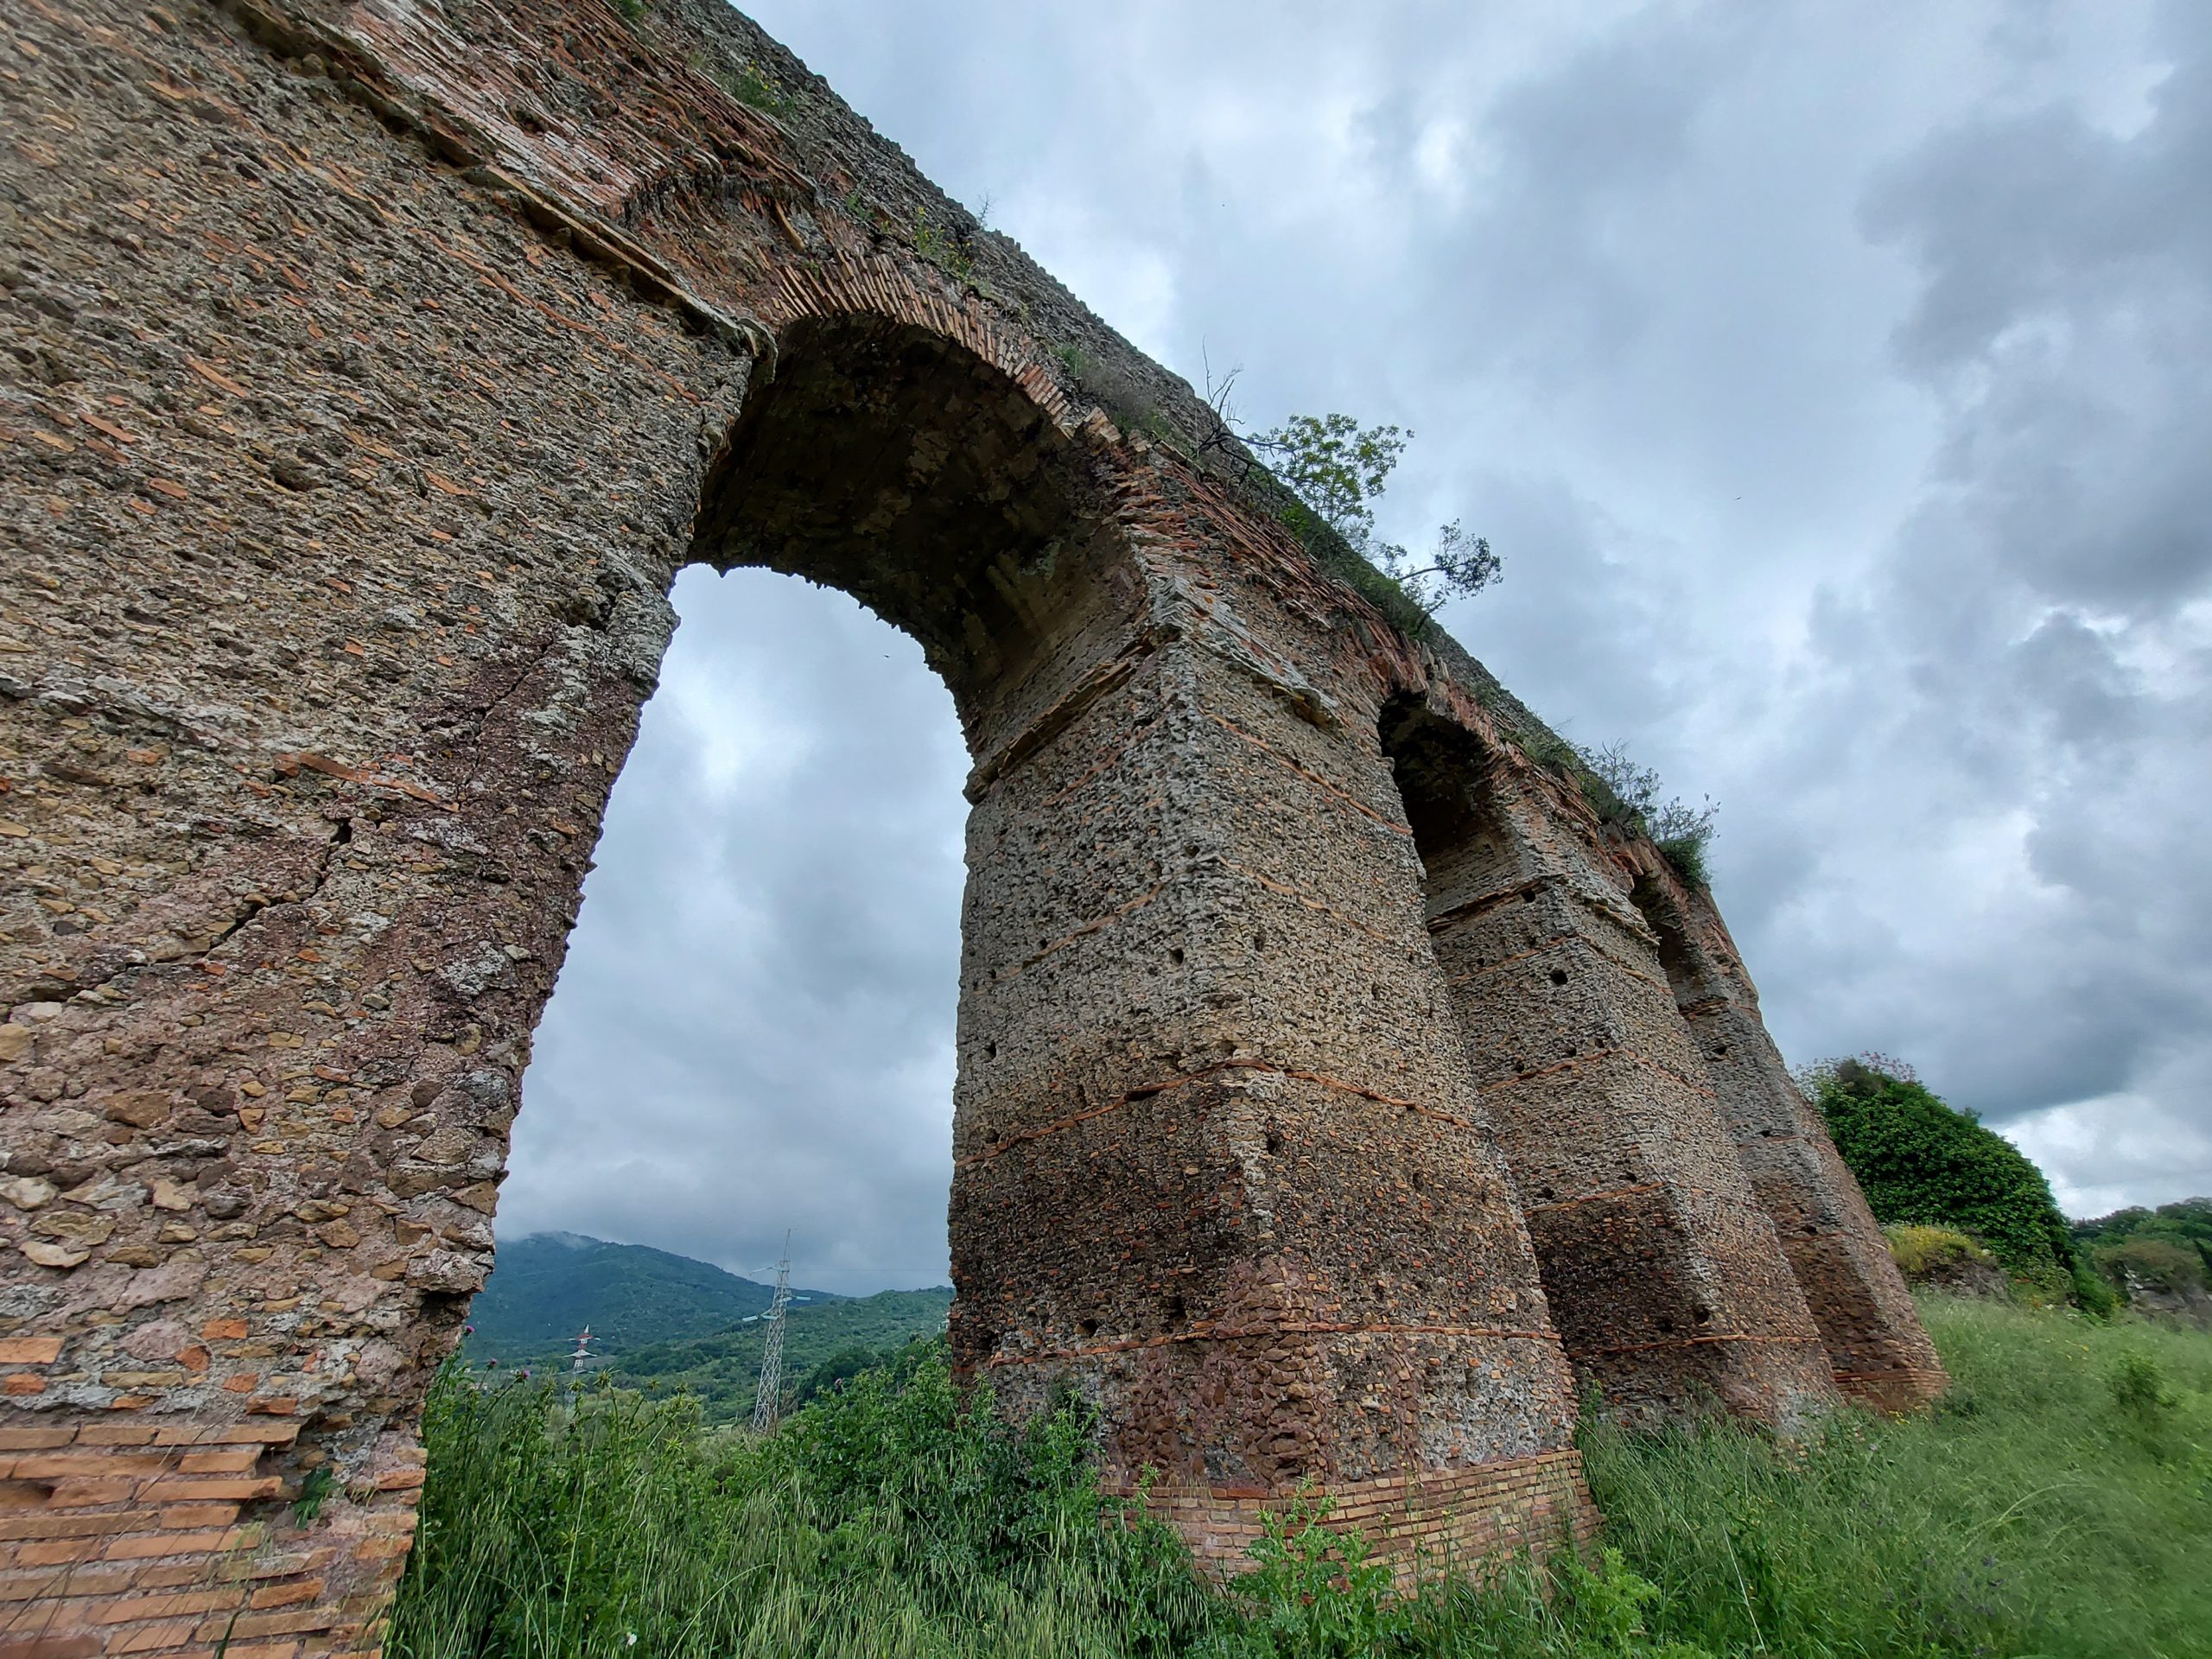 Aqueduct, Tivoli, Italy / Kimberly Sullivan